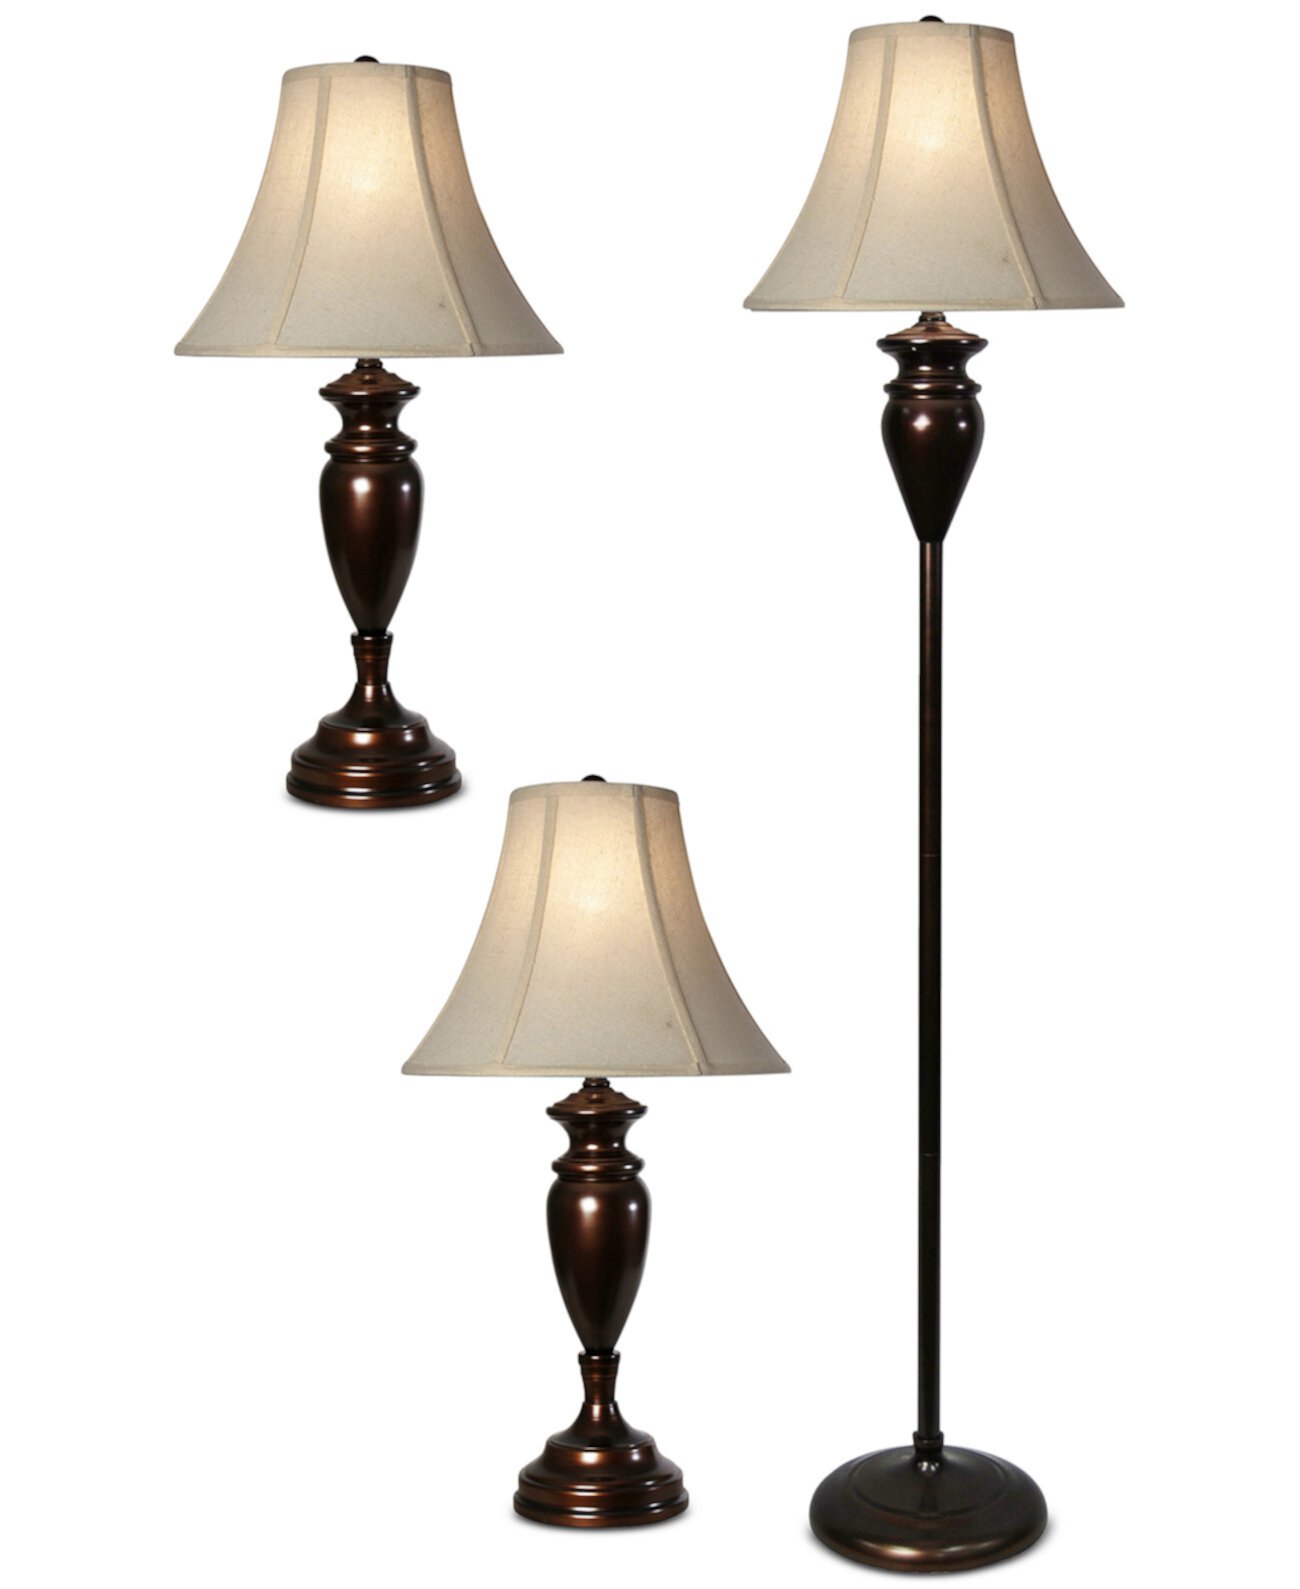 Набор из 3 ламп Dunbrook Finish: 1 торшер и 2 настольные лампы StyleCraft Home Collection